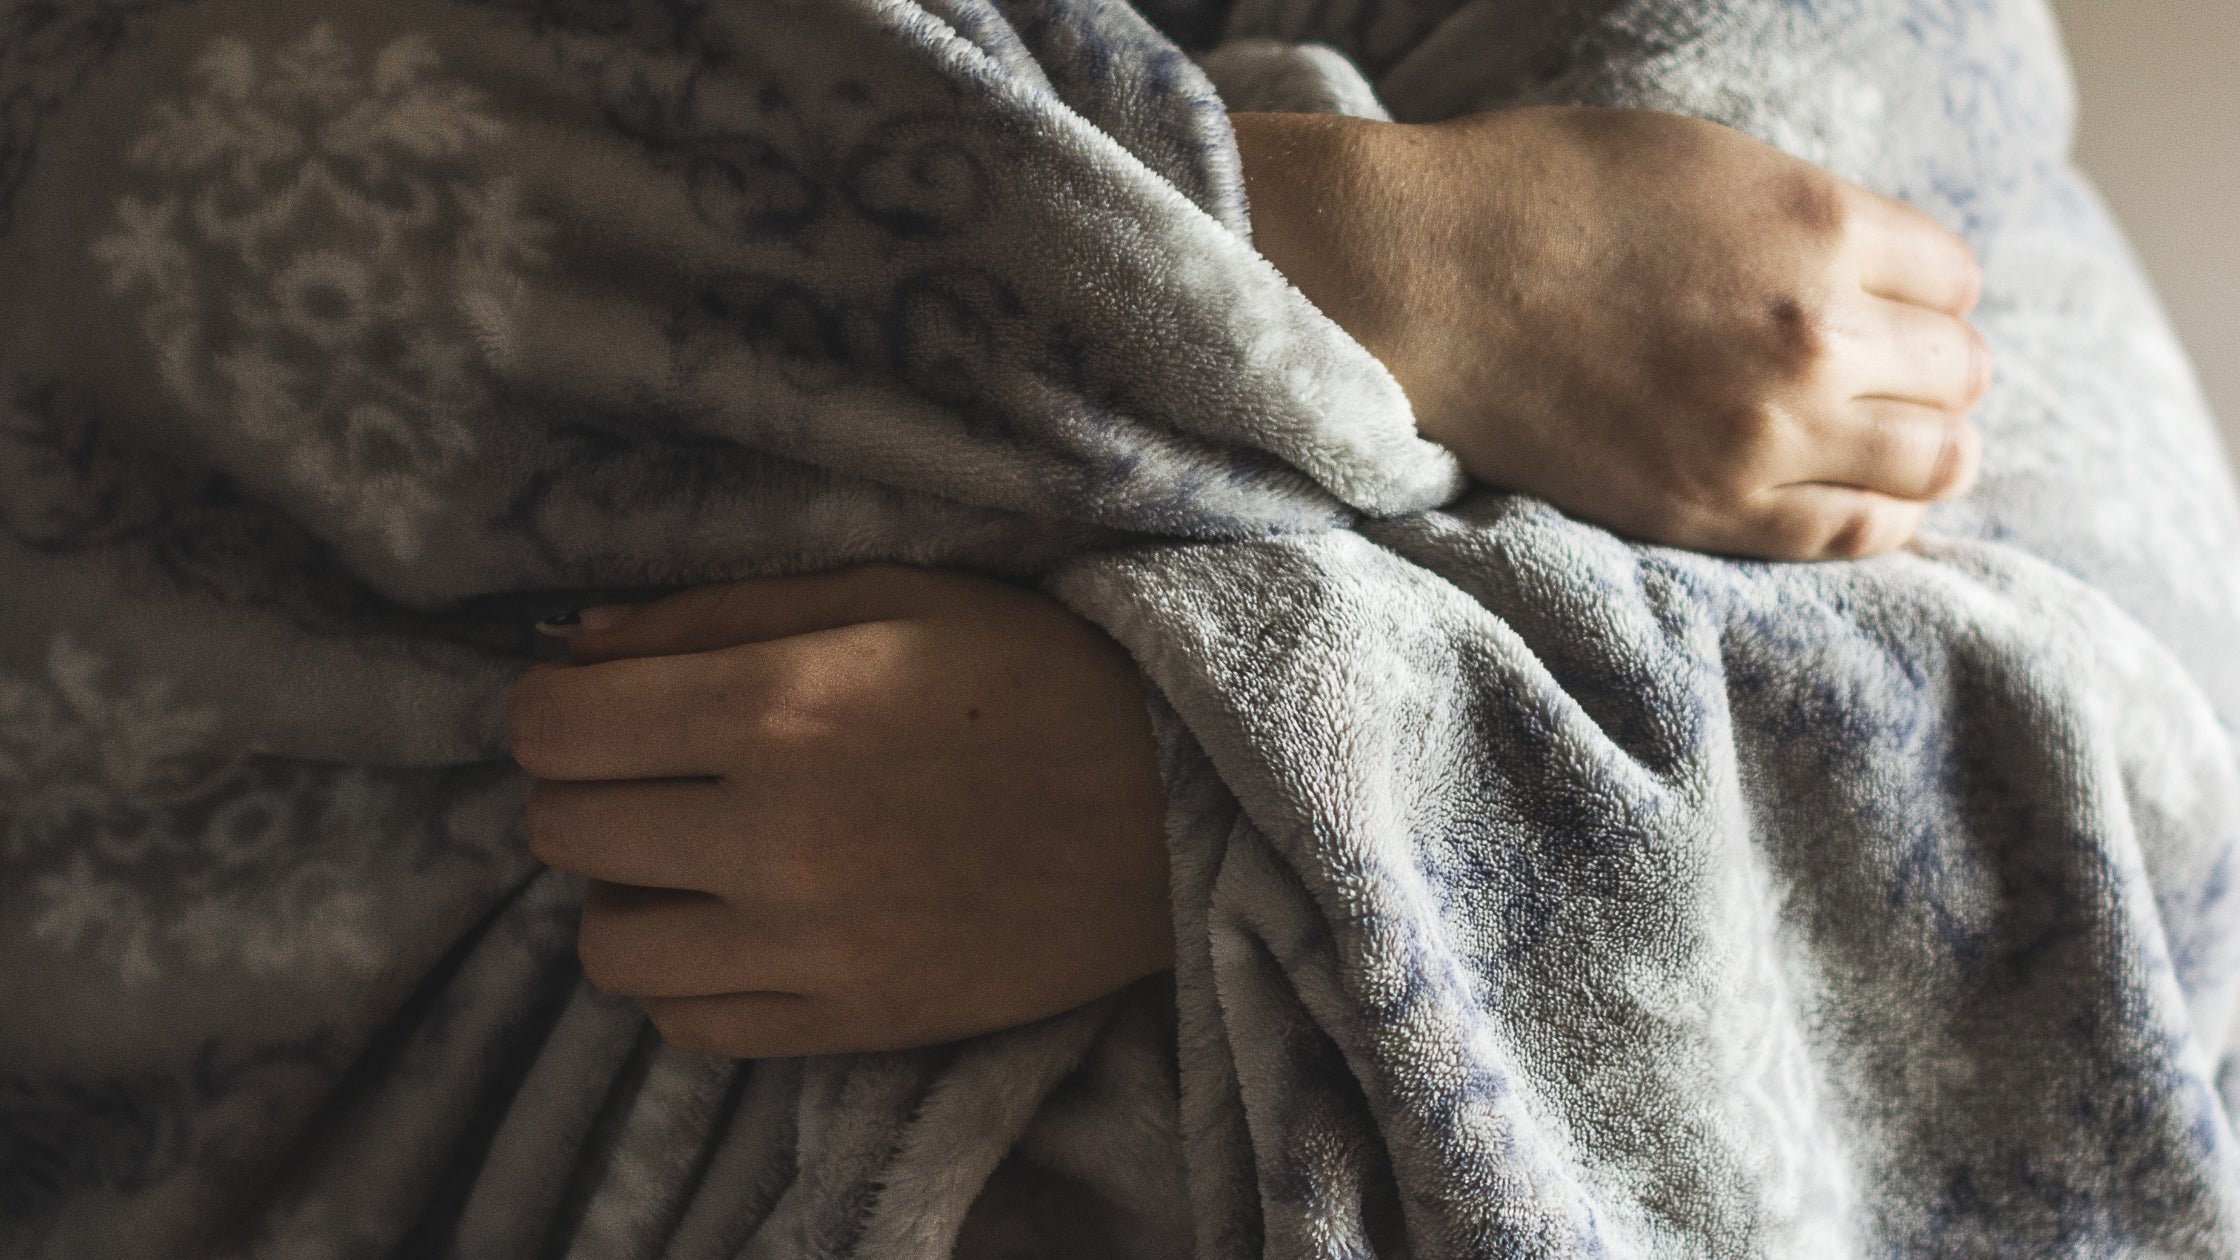 COPD patient under think warm blanket